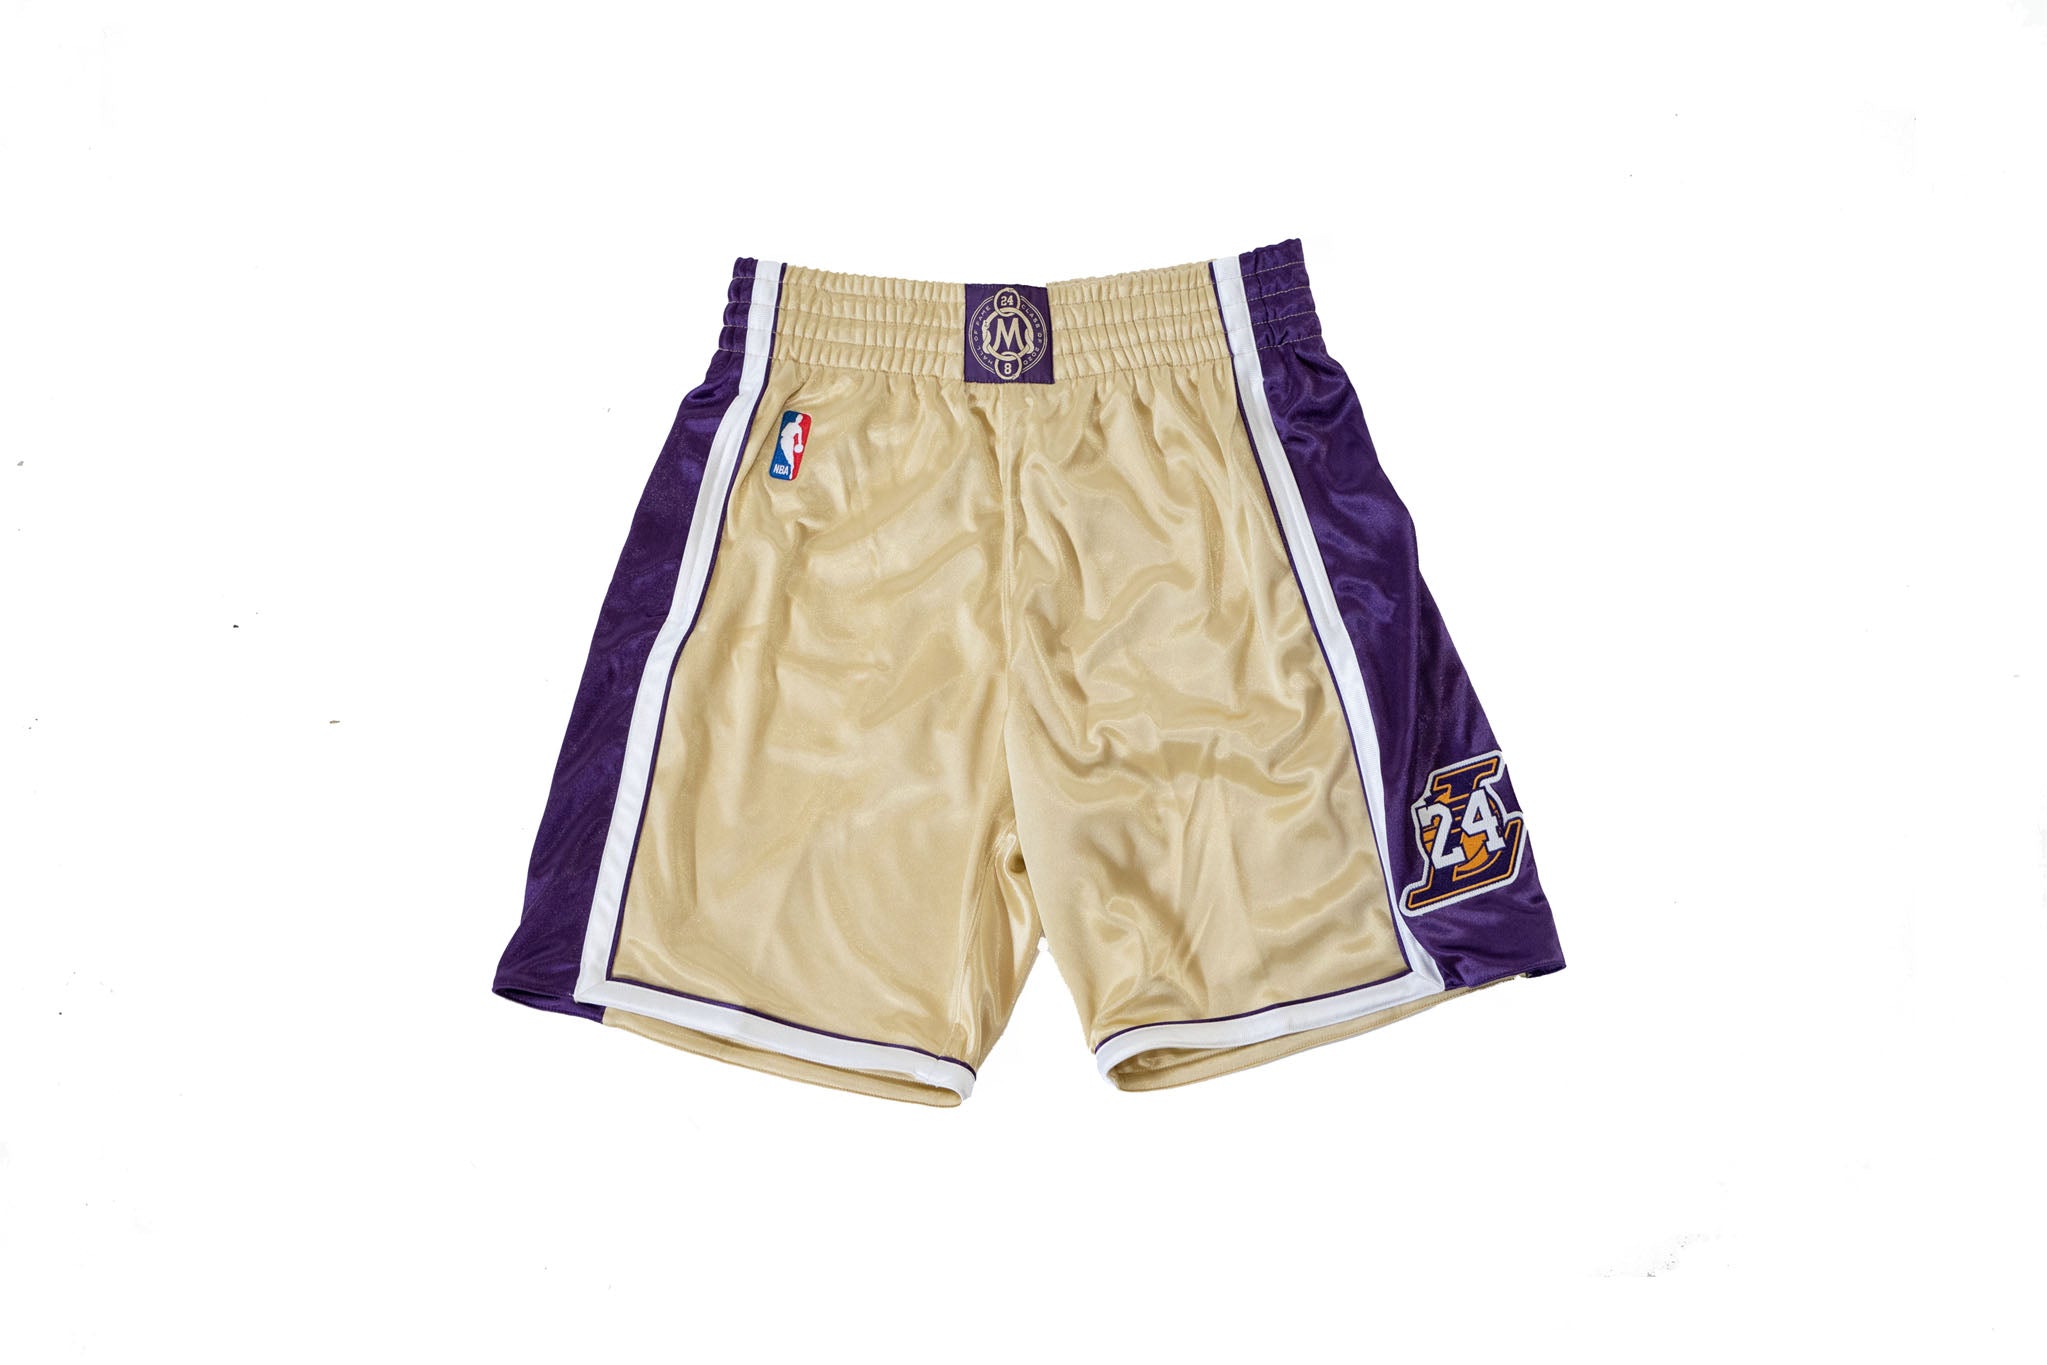 Mitchell & Ness NBA LA Lakers Kobe Bryant 8 Authentic Jersey White